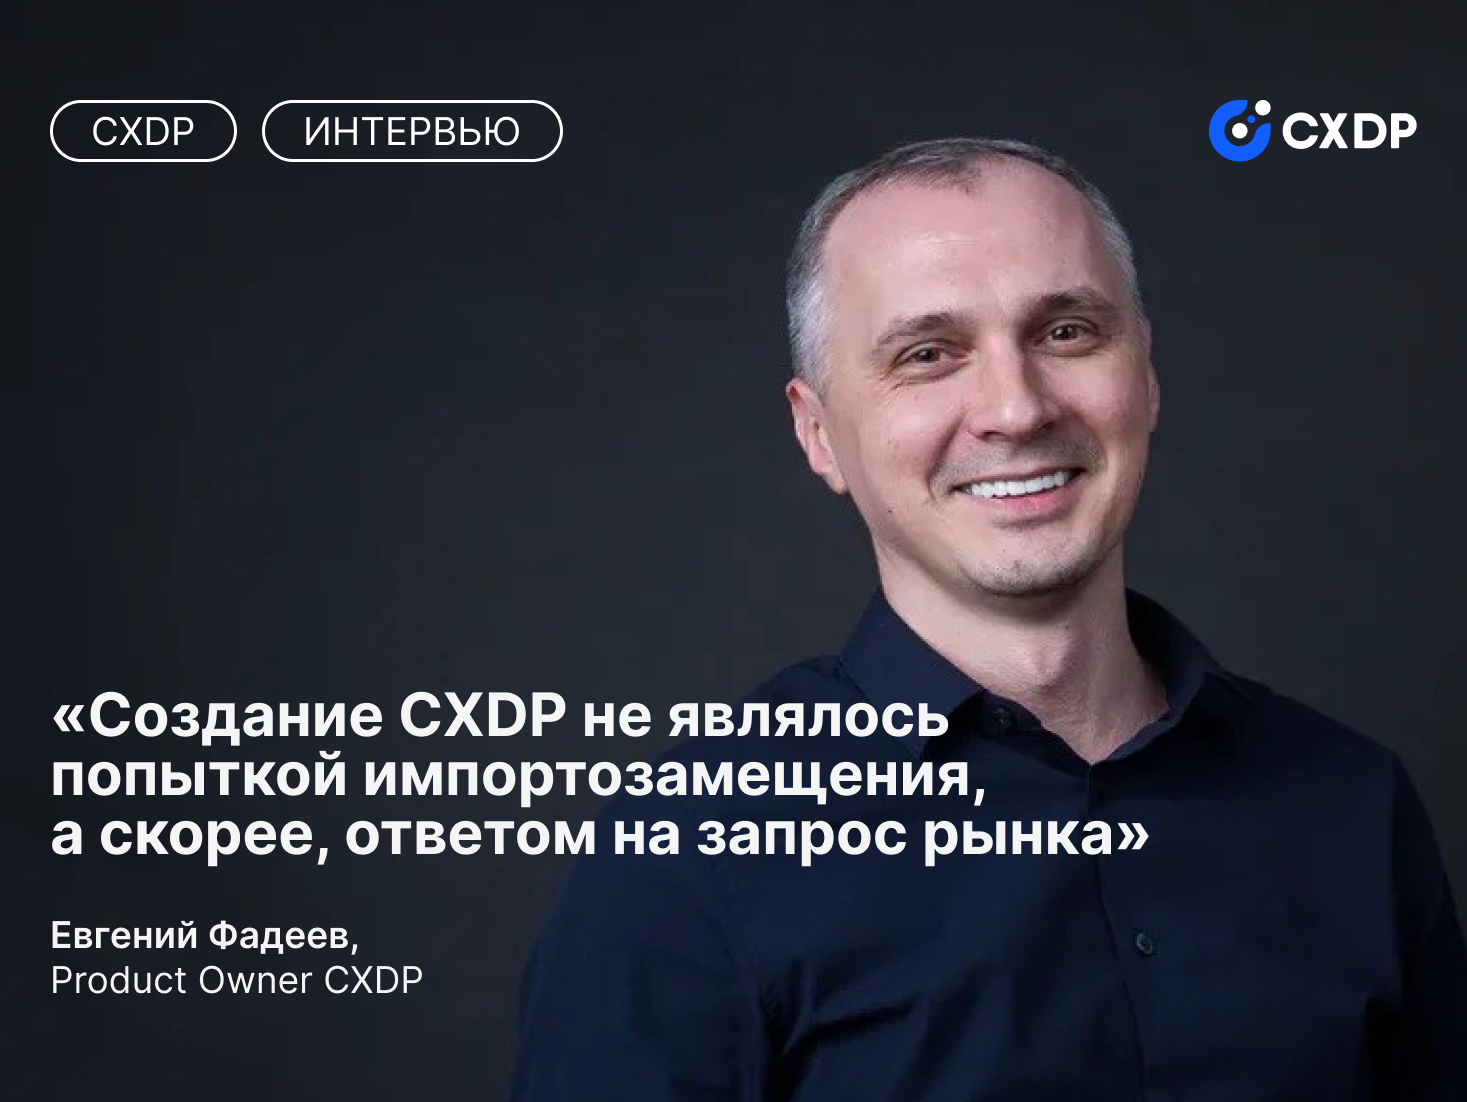 Евгений Фадеев о создании CXDP, философии продукта и проблемах, которые помогает решить платформа.